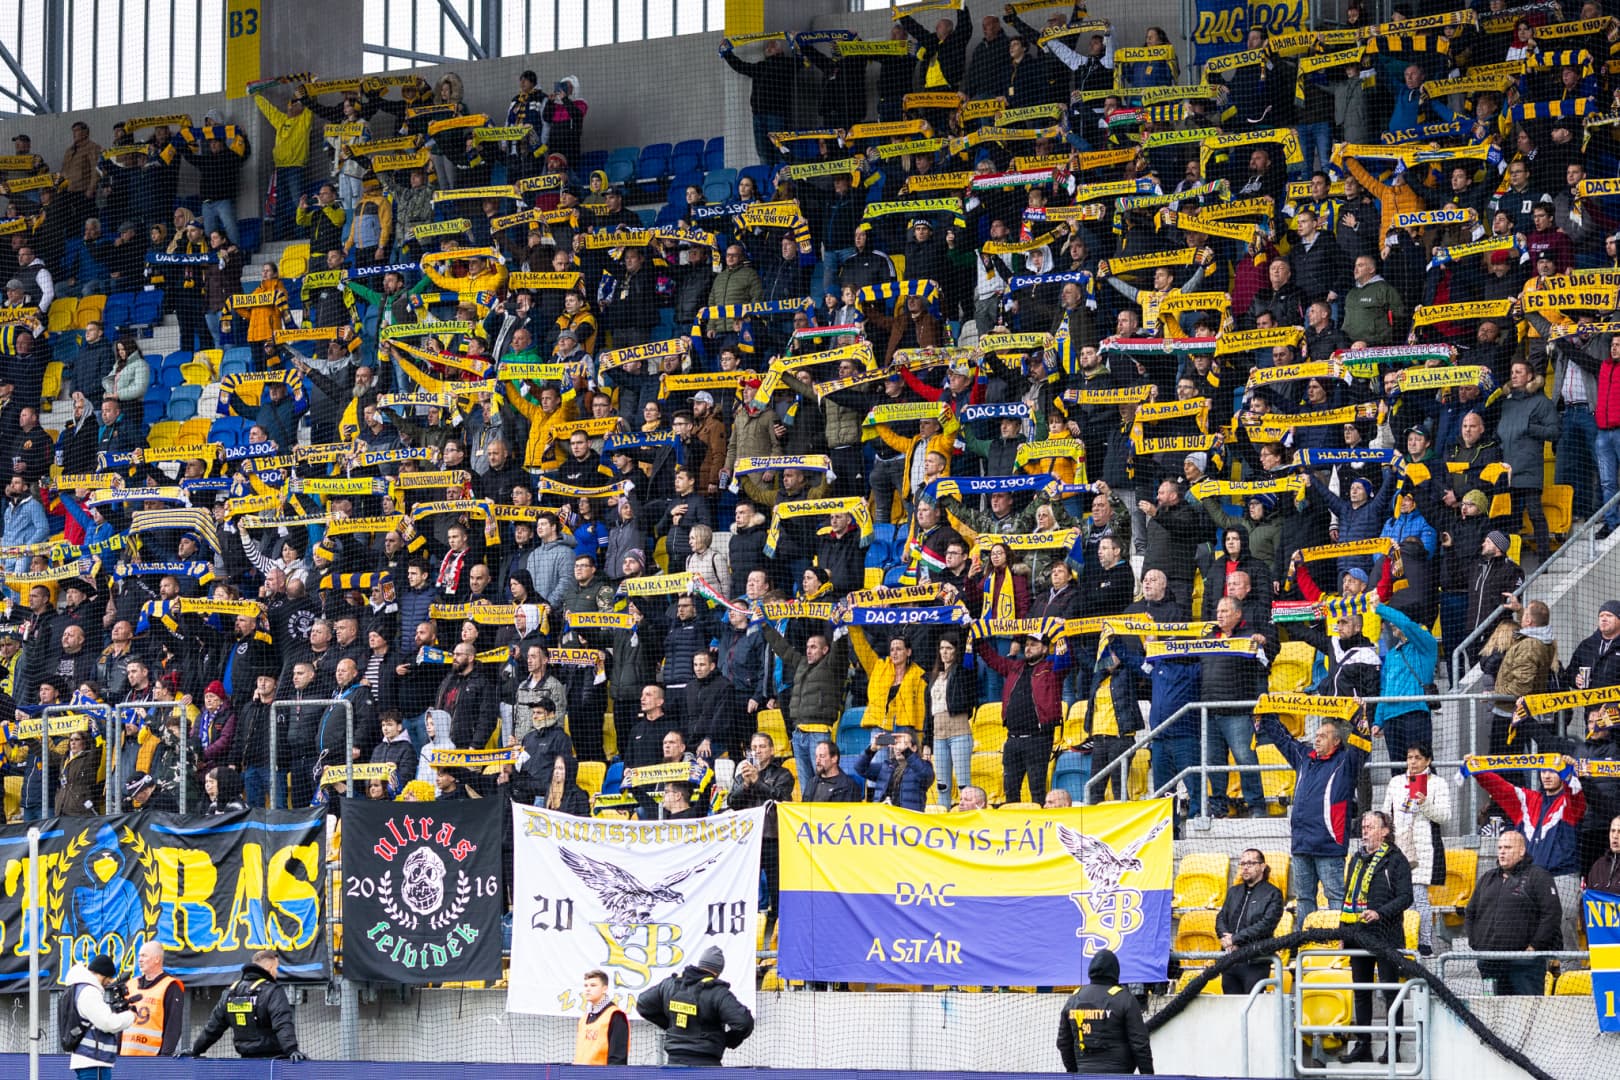 Elfogytak a vendégjegyek a Trenčín–DAC bajnokira, a dunaszerdahelyi csapat további helyek biztosítását kéri